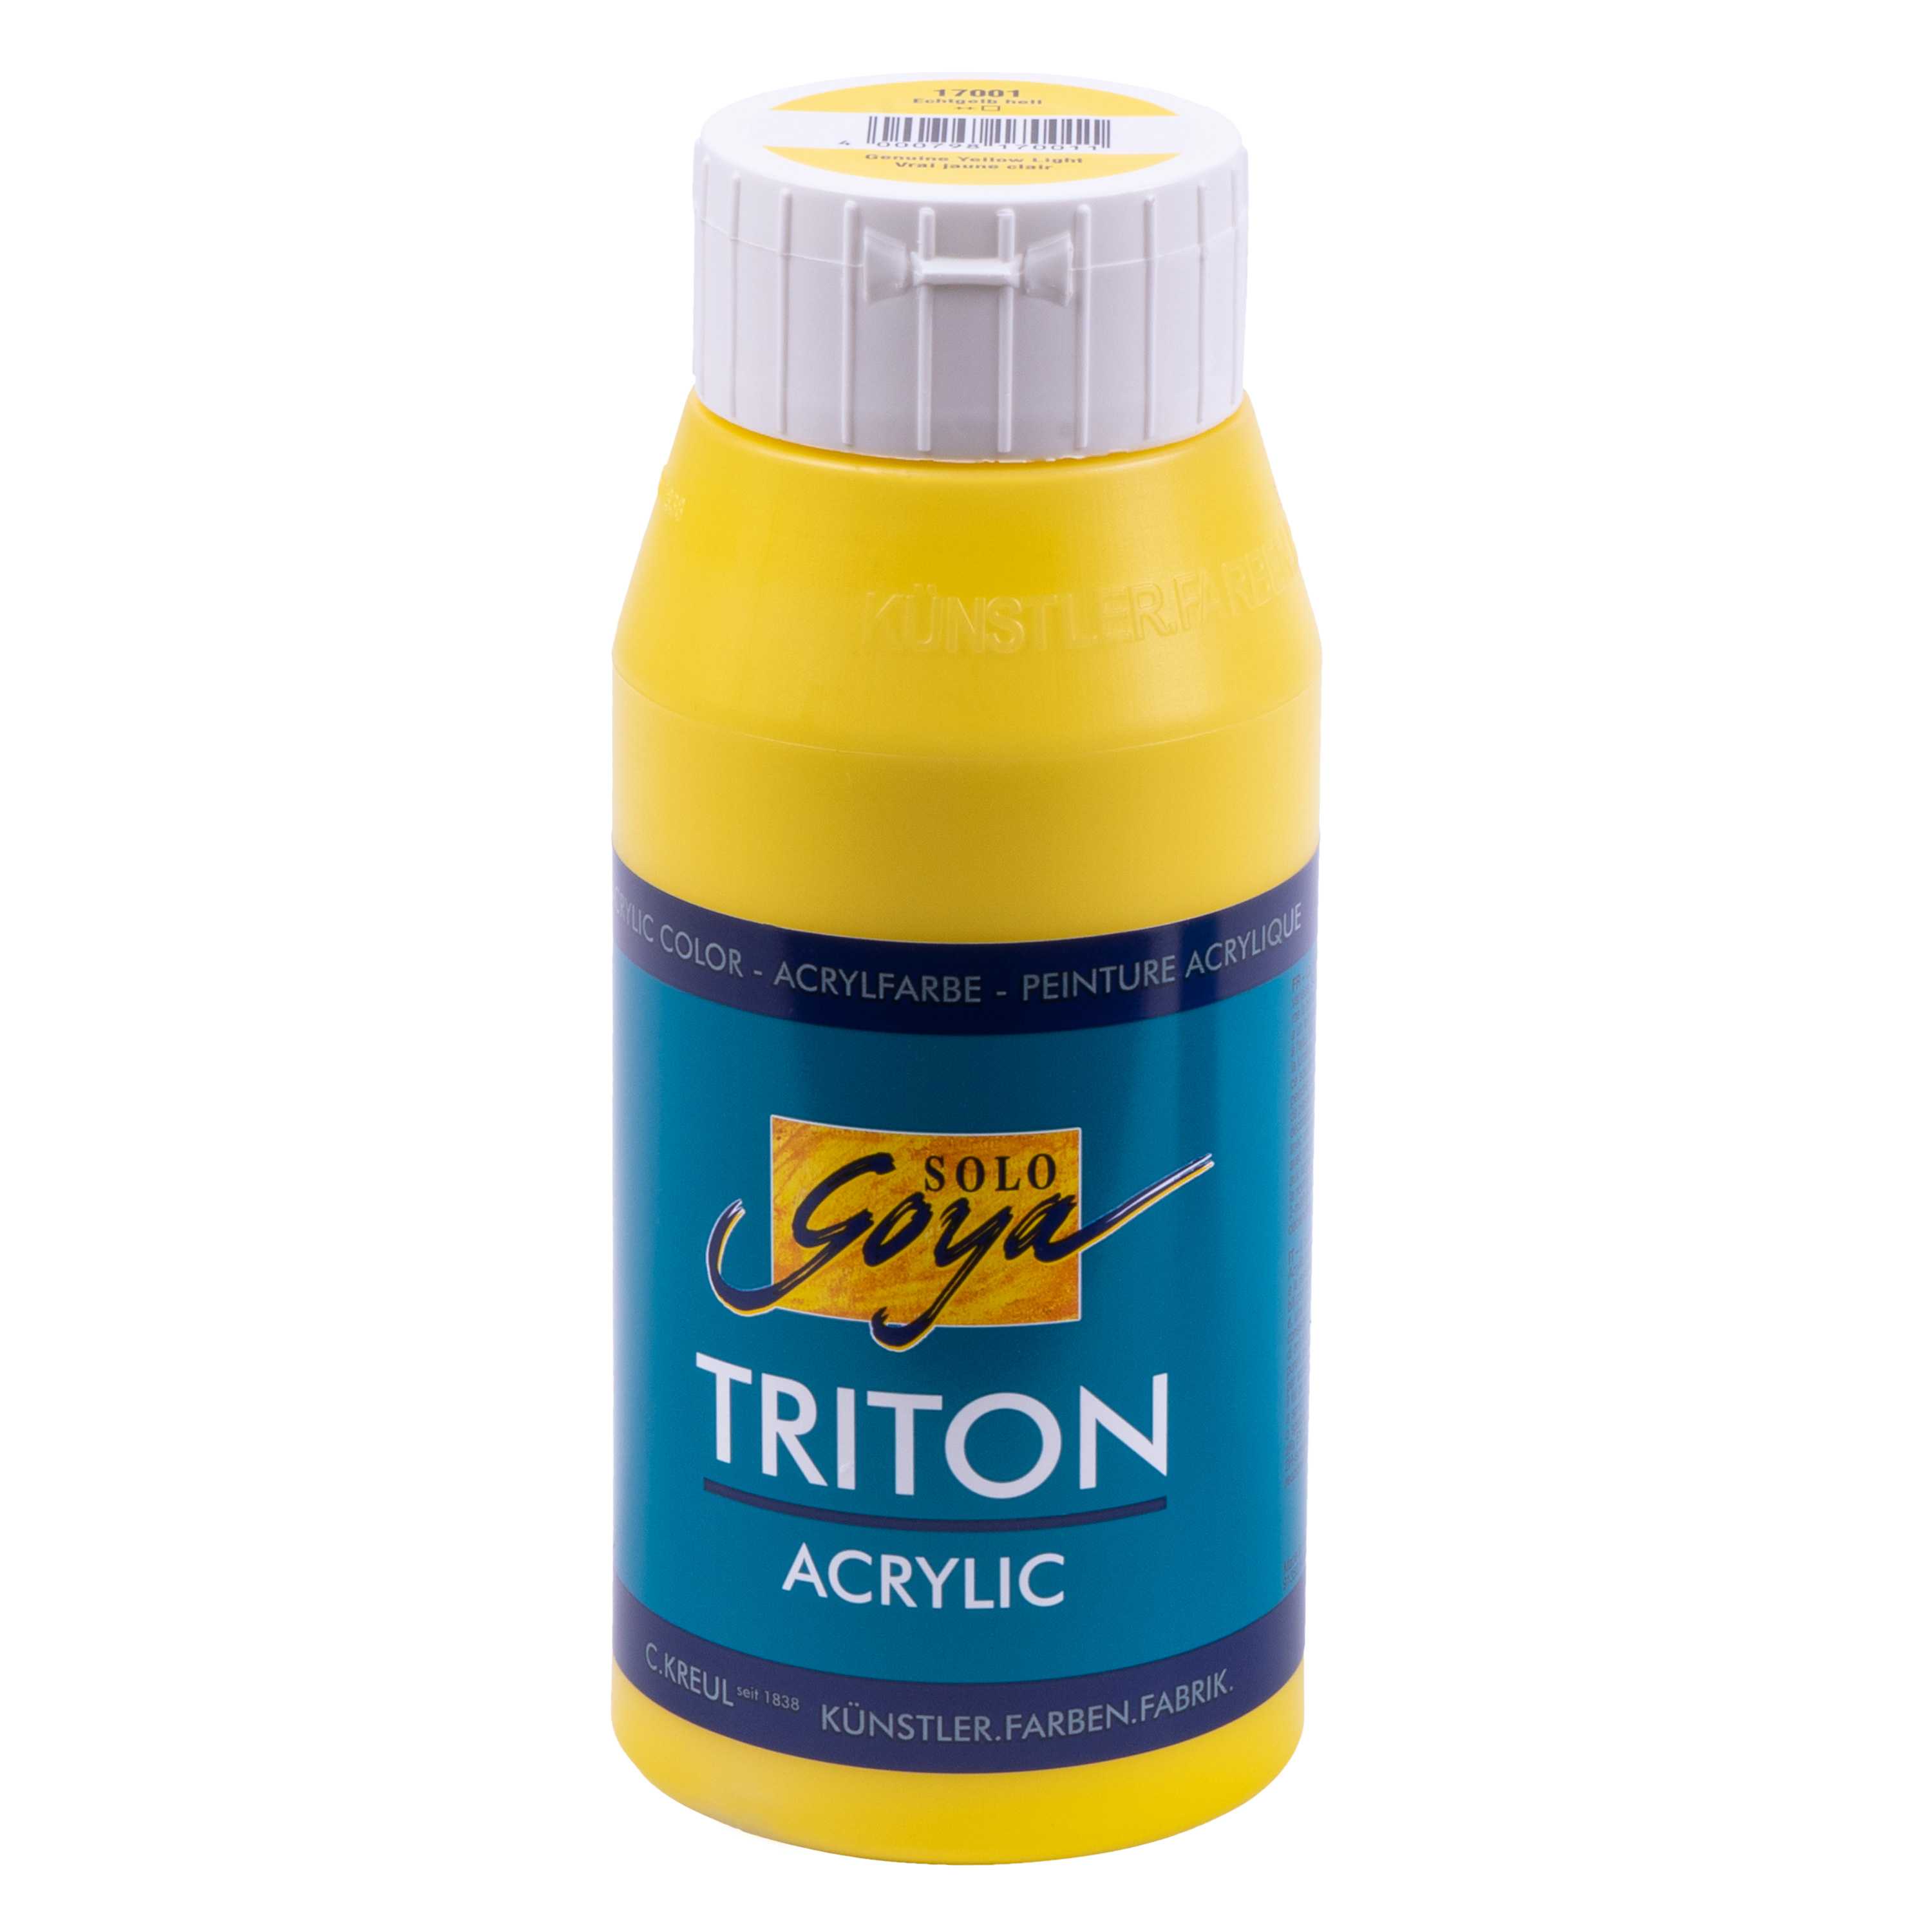 SOLO GOYA Triton Acrylfarbe, echtgelb, 750 ml